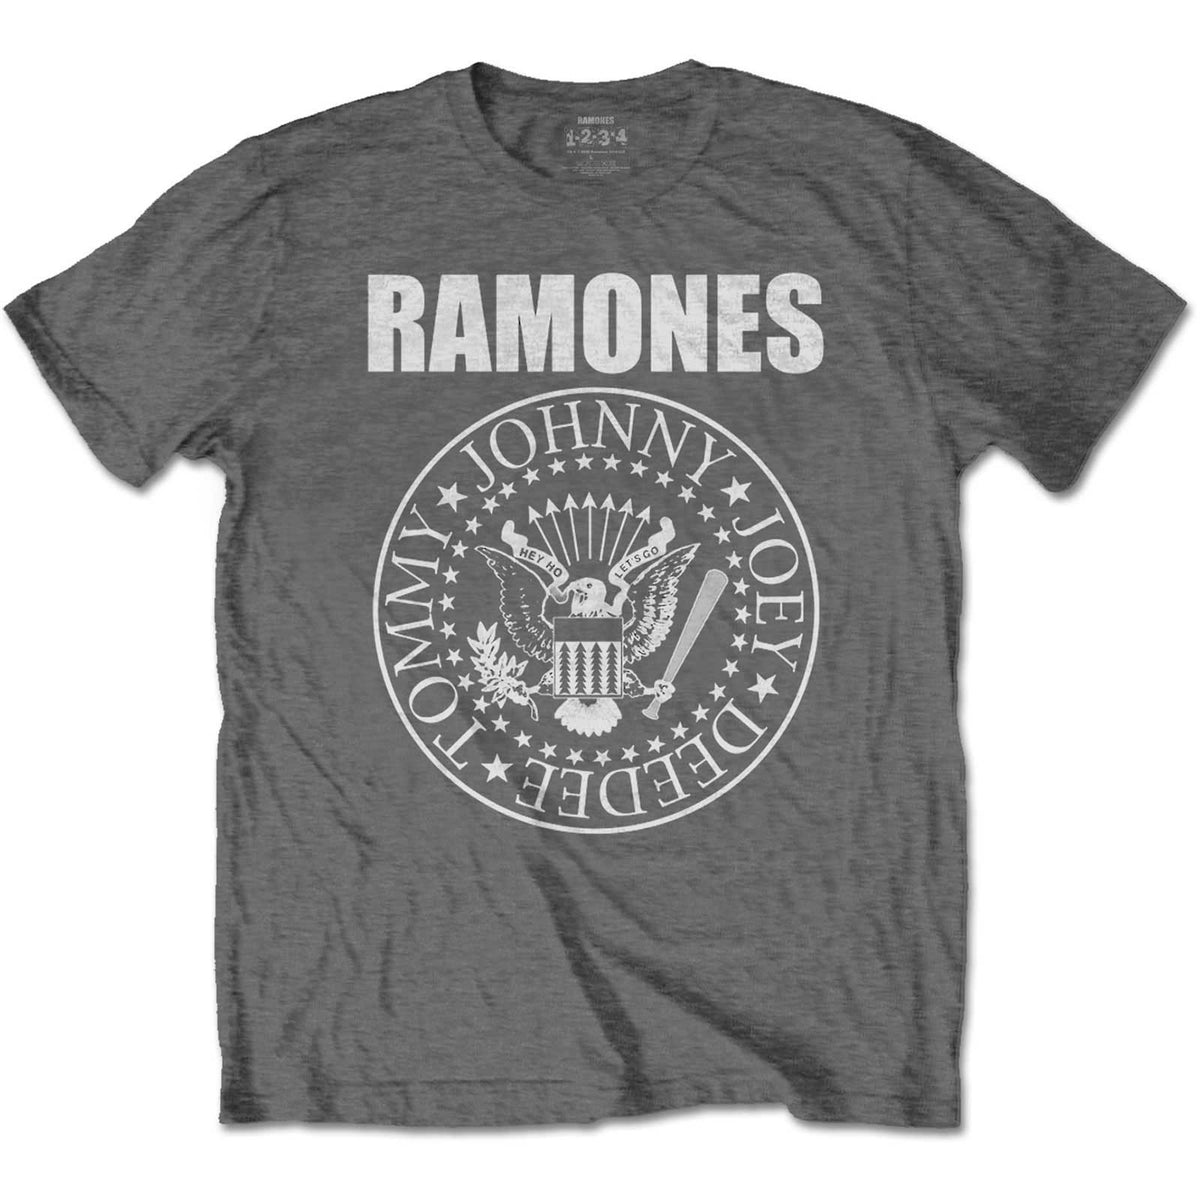 Ramones Kinder-T-Shirt – Präsidentensiegel – Dunkelgrau. Offizielles Lizenzdesign für Kinder